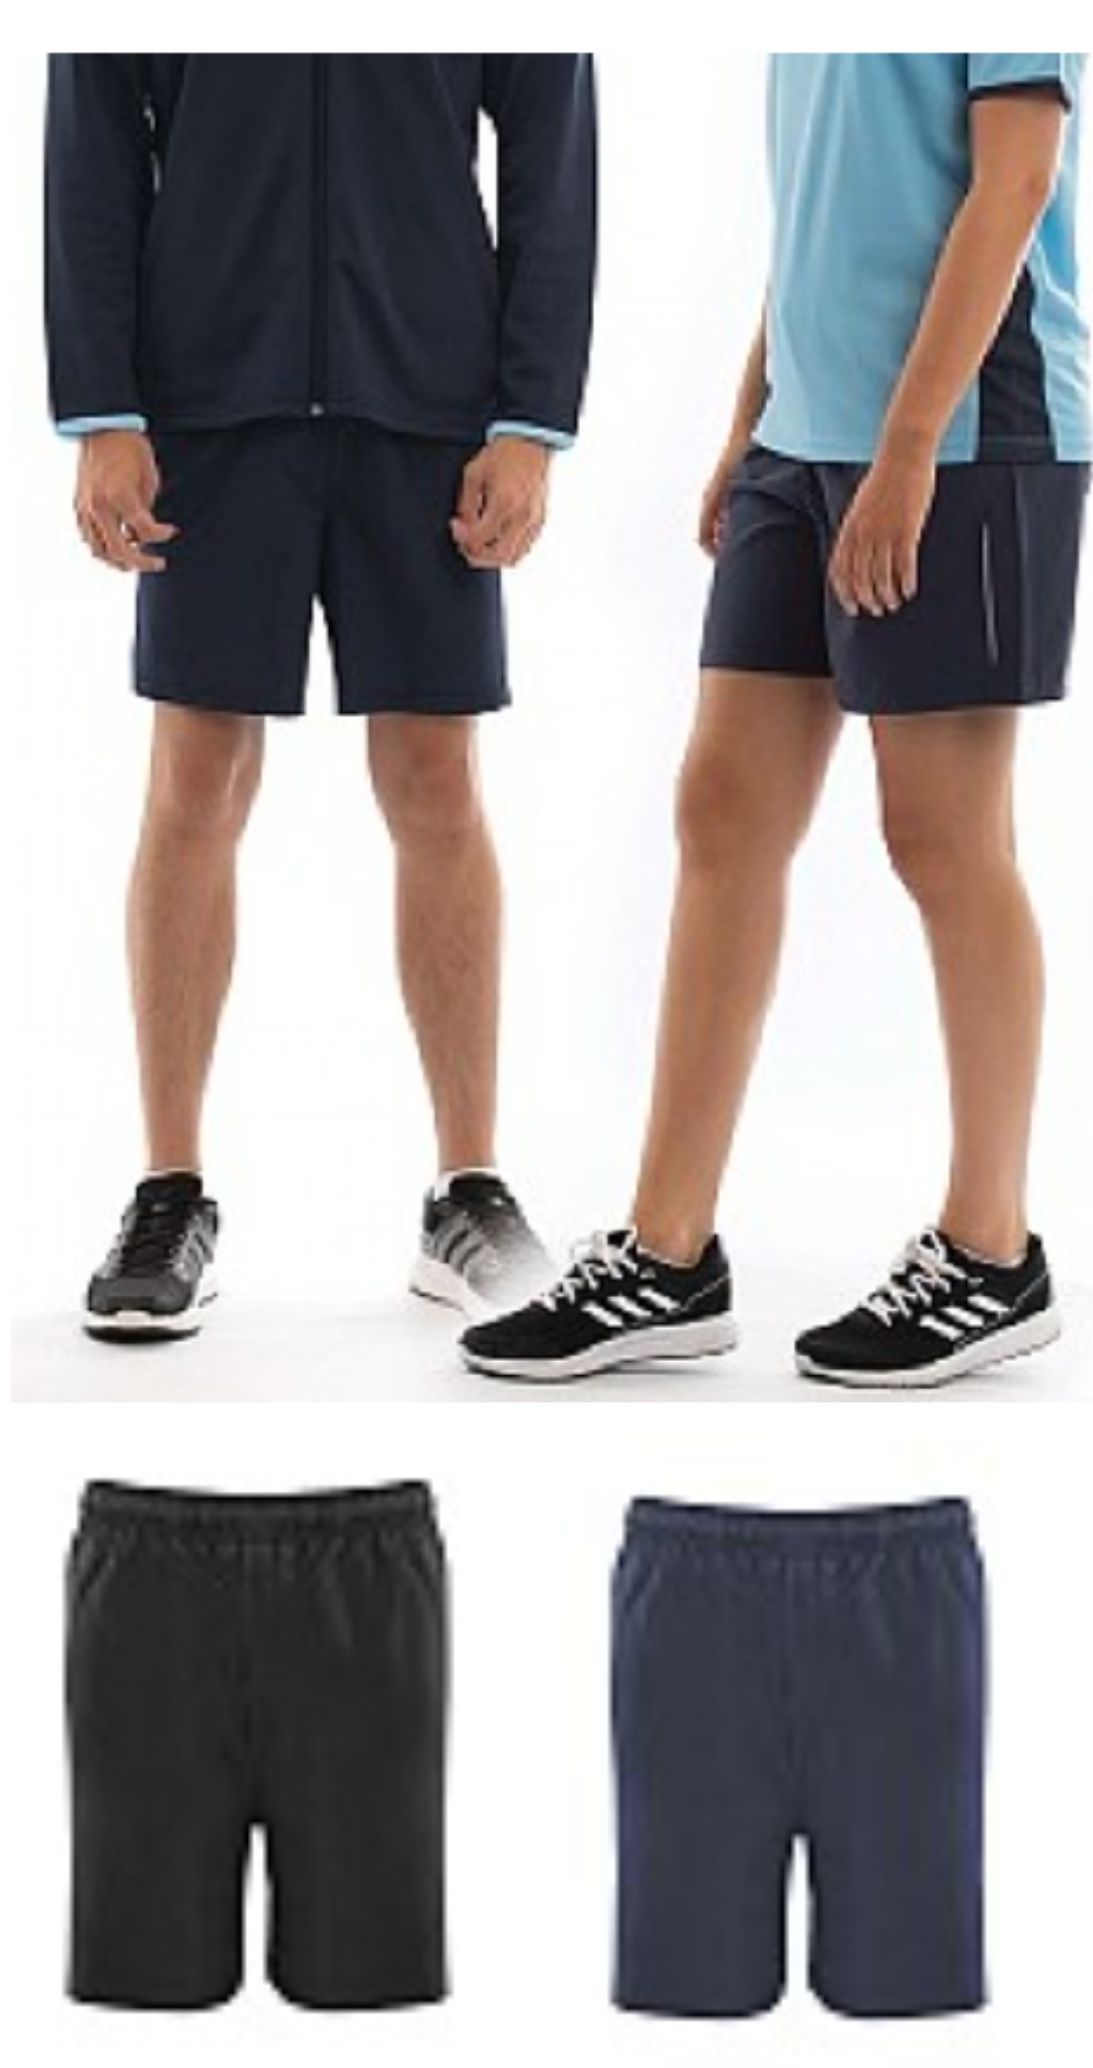 Aptus Essentials 112318 Senior Training Shorts